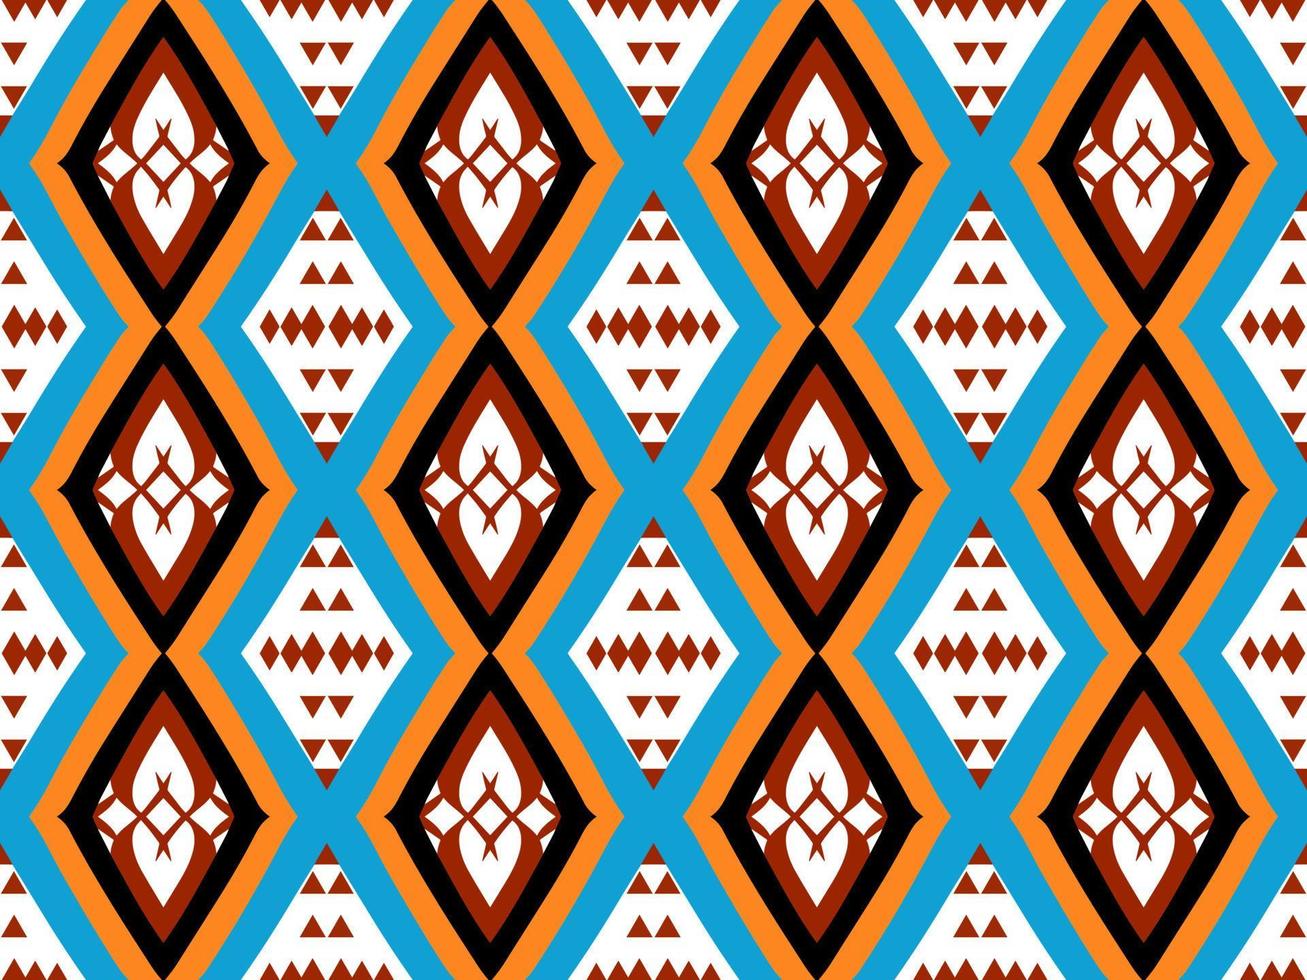 kleurrijk naadloos patroon met tribal vorm geven aan. ontworpen in ikat, boho, azteeks, volk, motief, luxe Arabisch stijl. ideaal voor kleding stof kledingstuk, keramiek, behang. vector illustratie